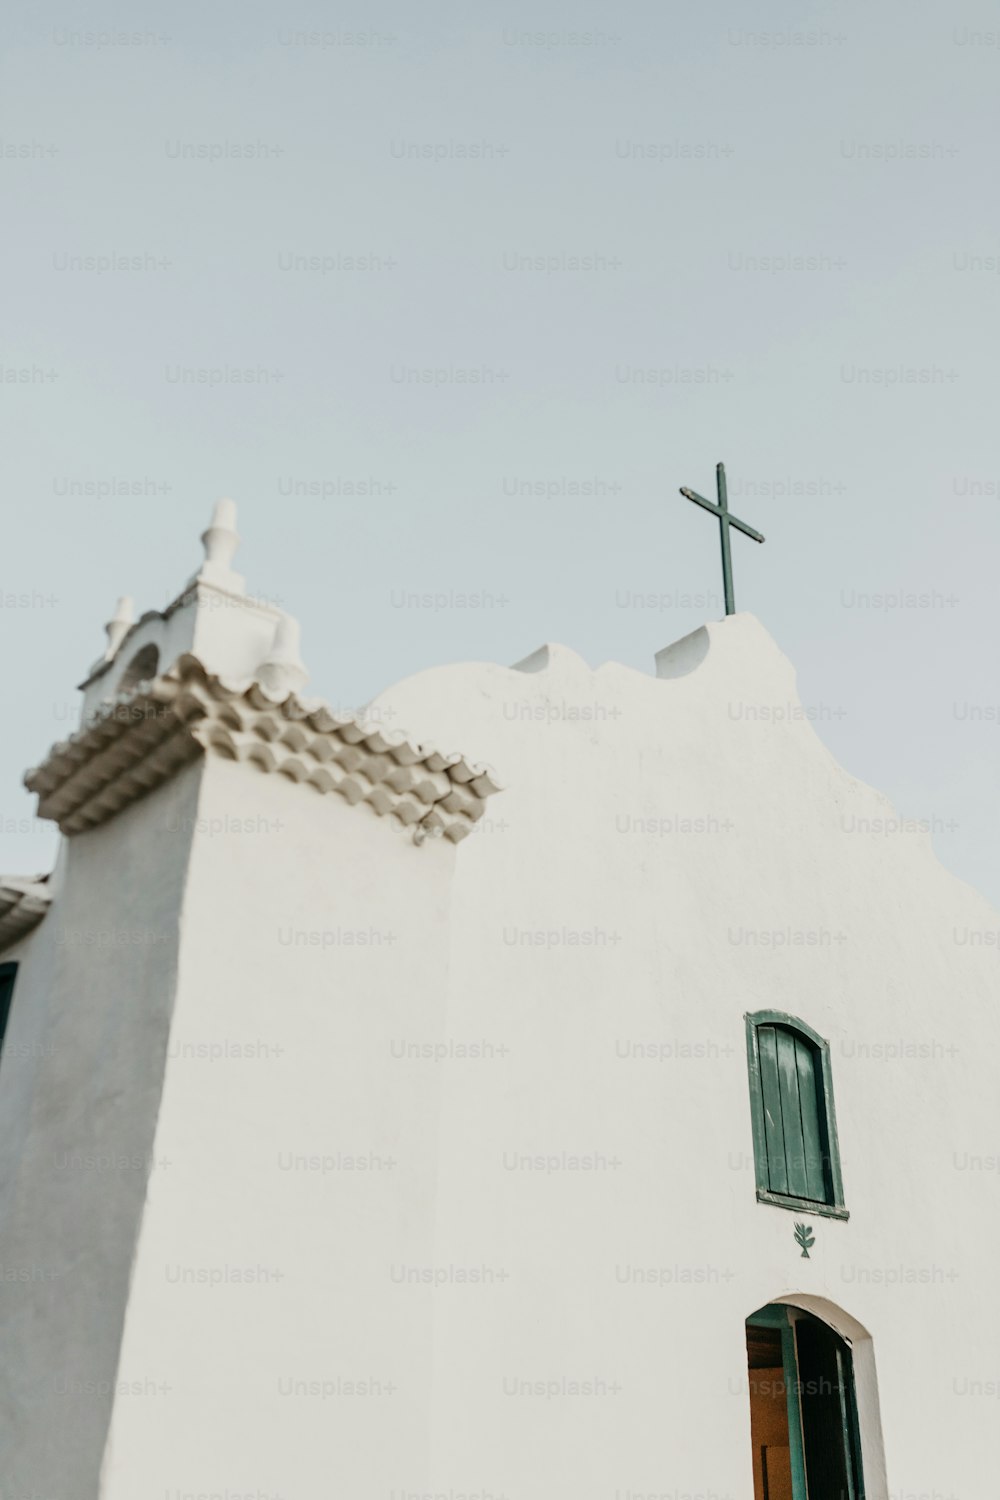 Una chiesa bianca con una croce in cima